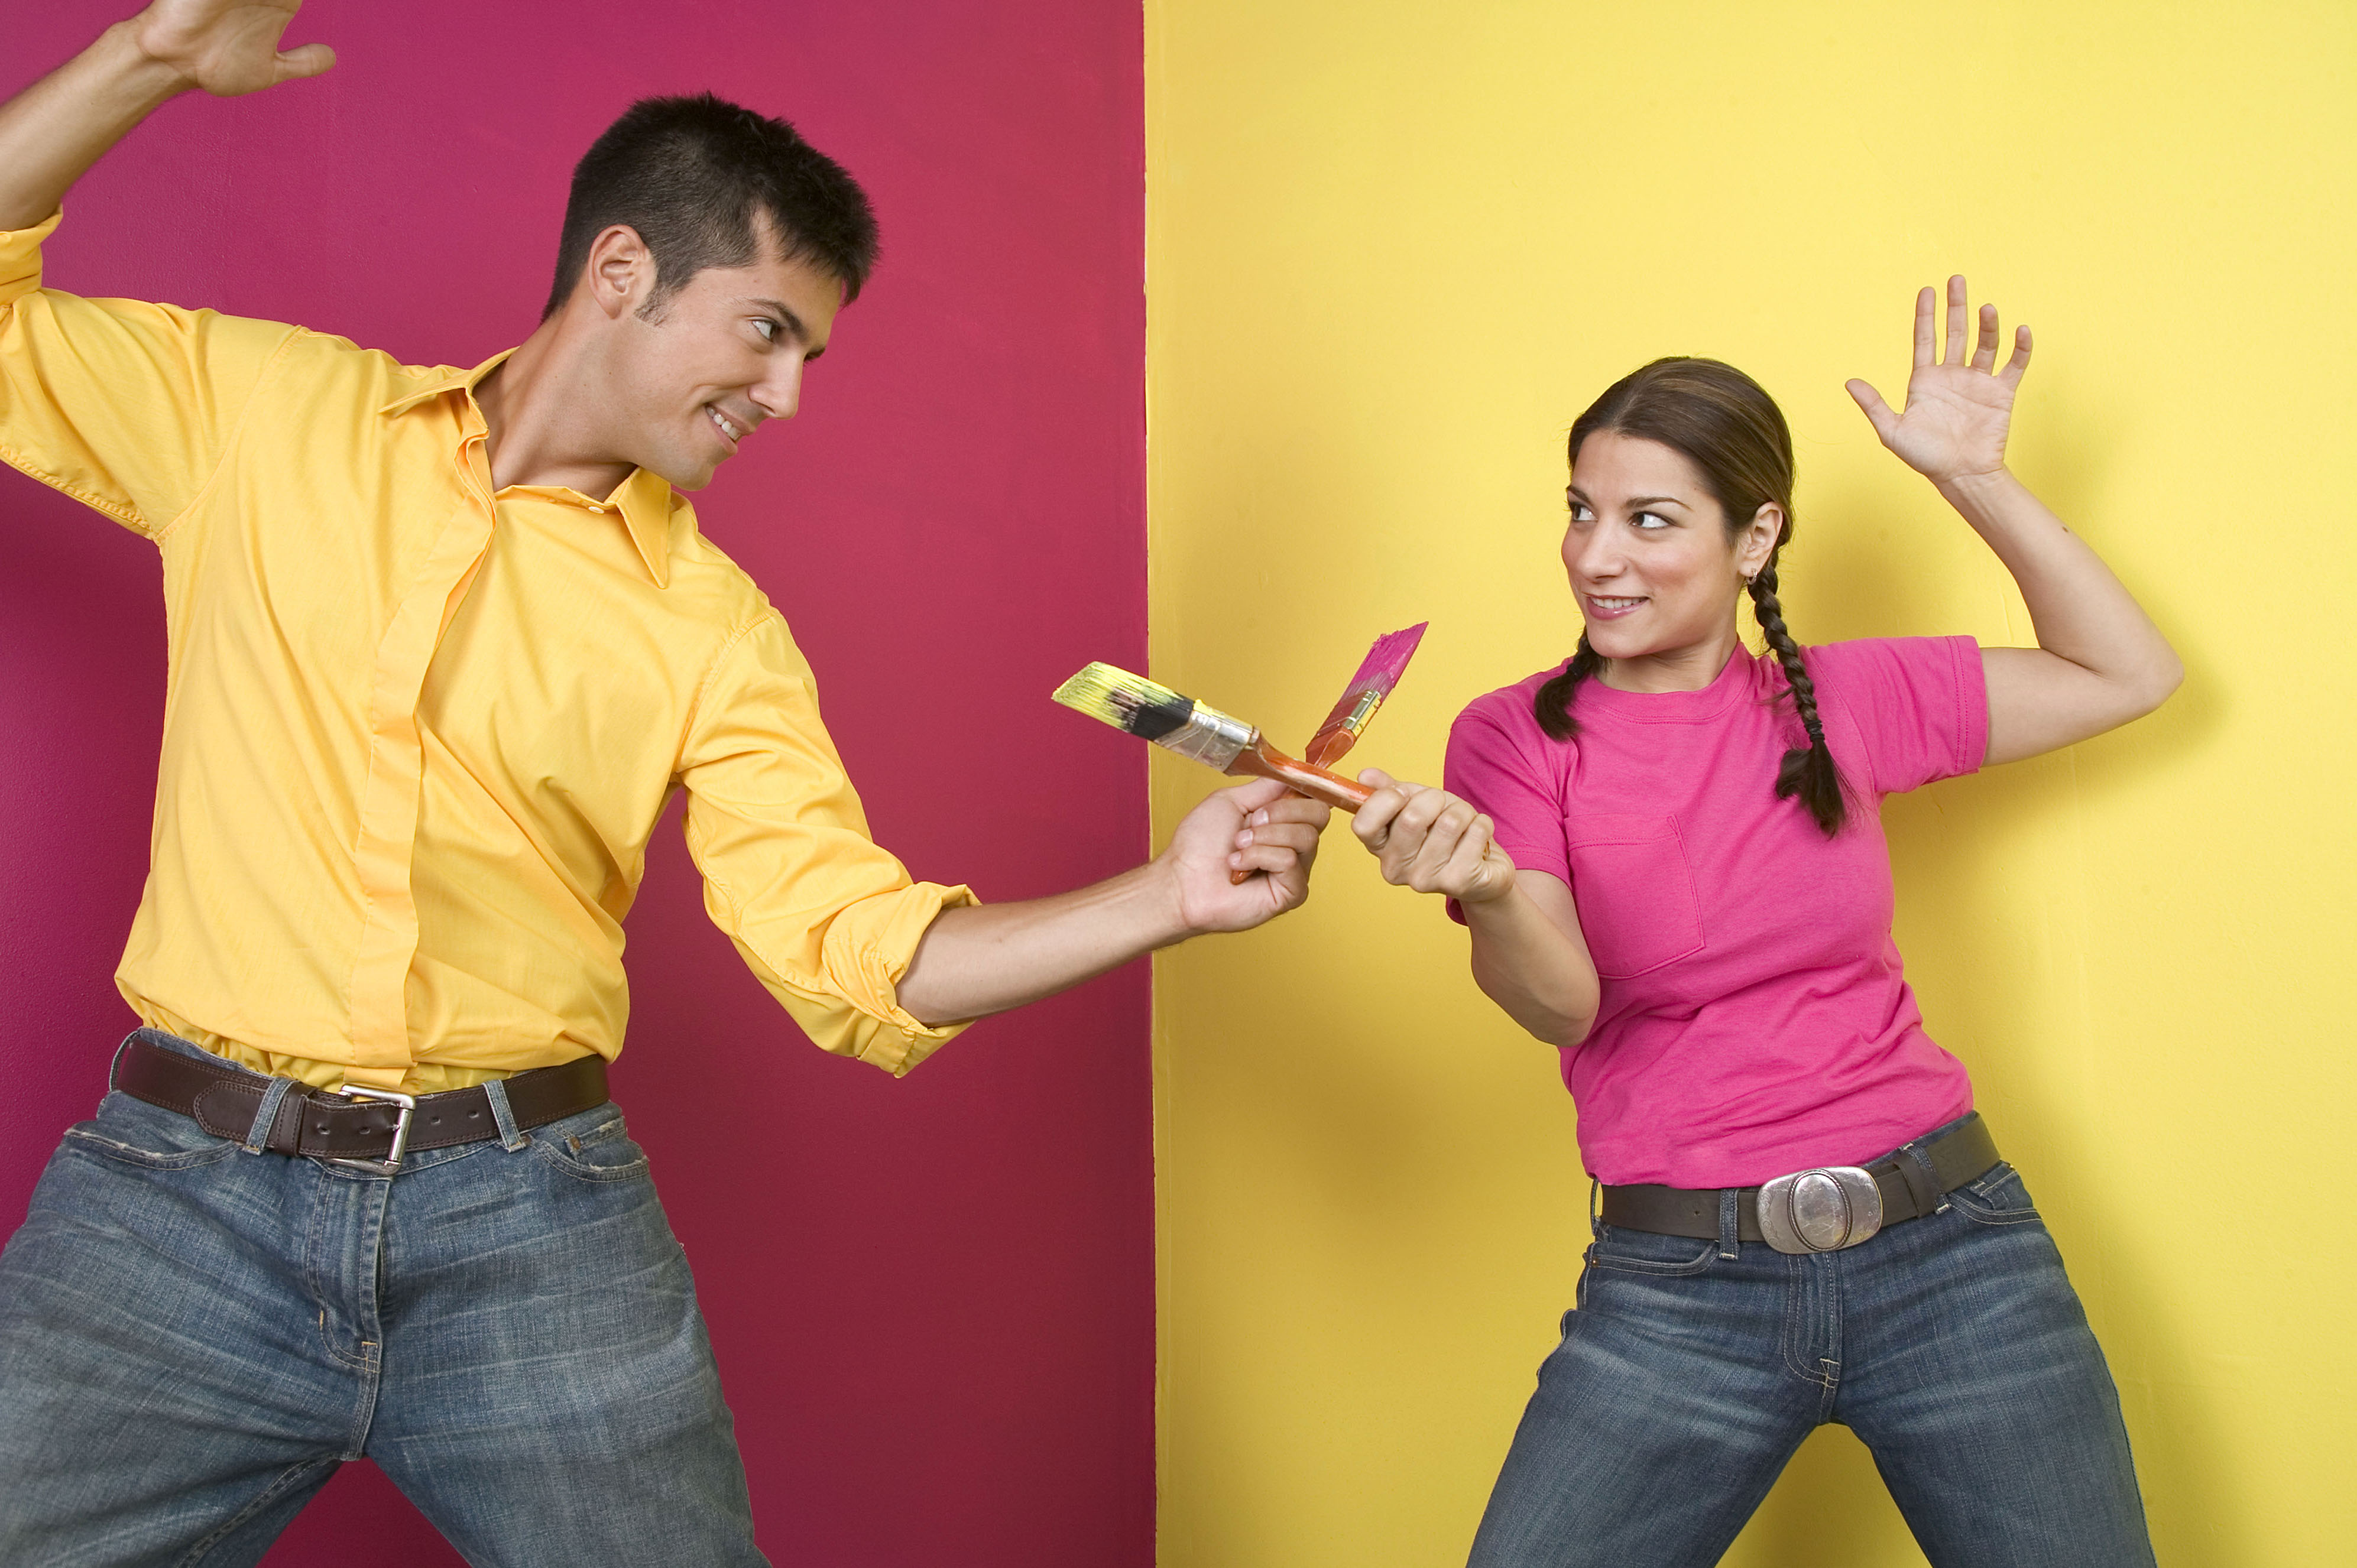 Ремонт весел. Человек клеит обои. Люди делают ремонт. Влюбленные делают ремонт. Мужчина и женщина красят стену.